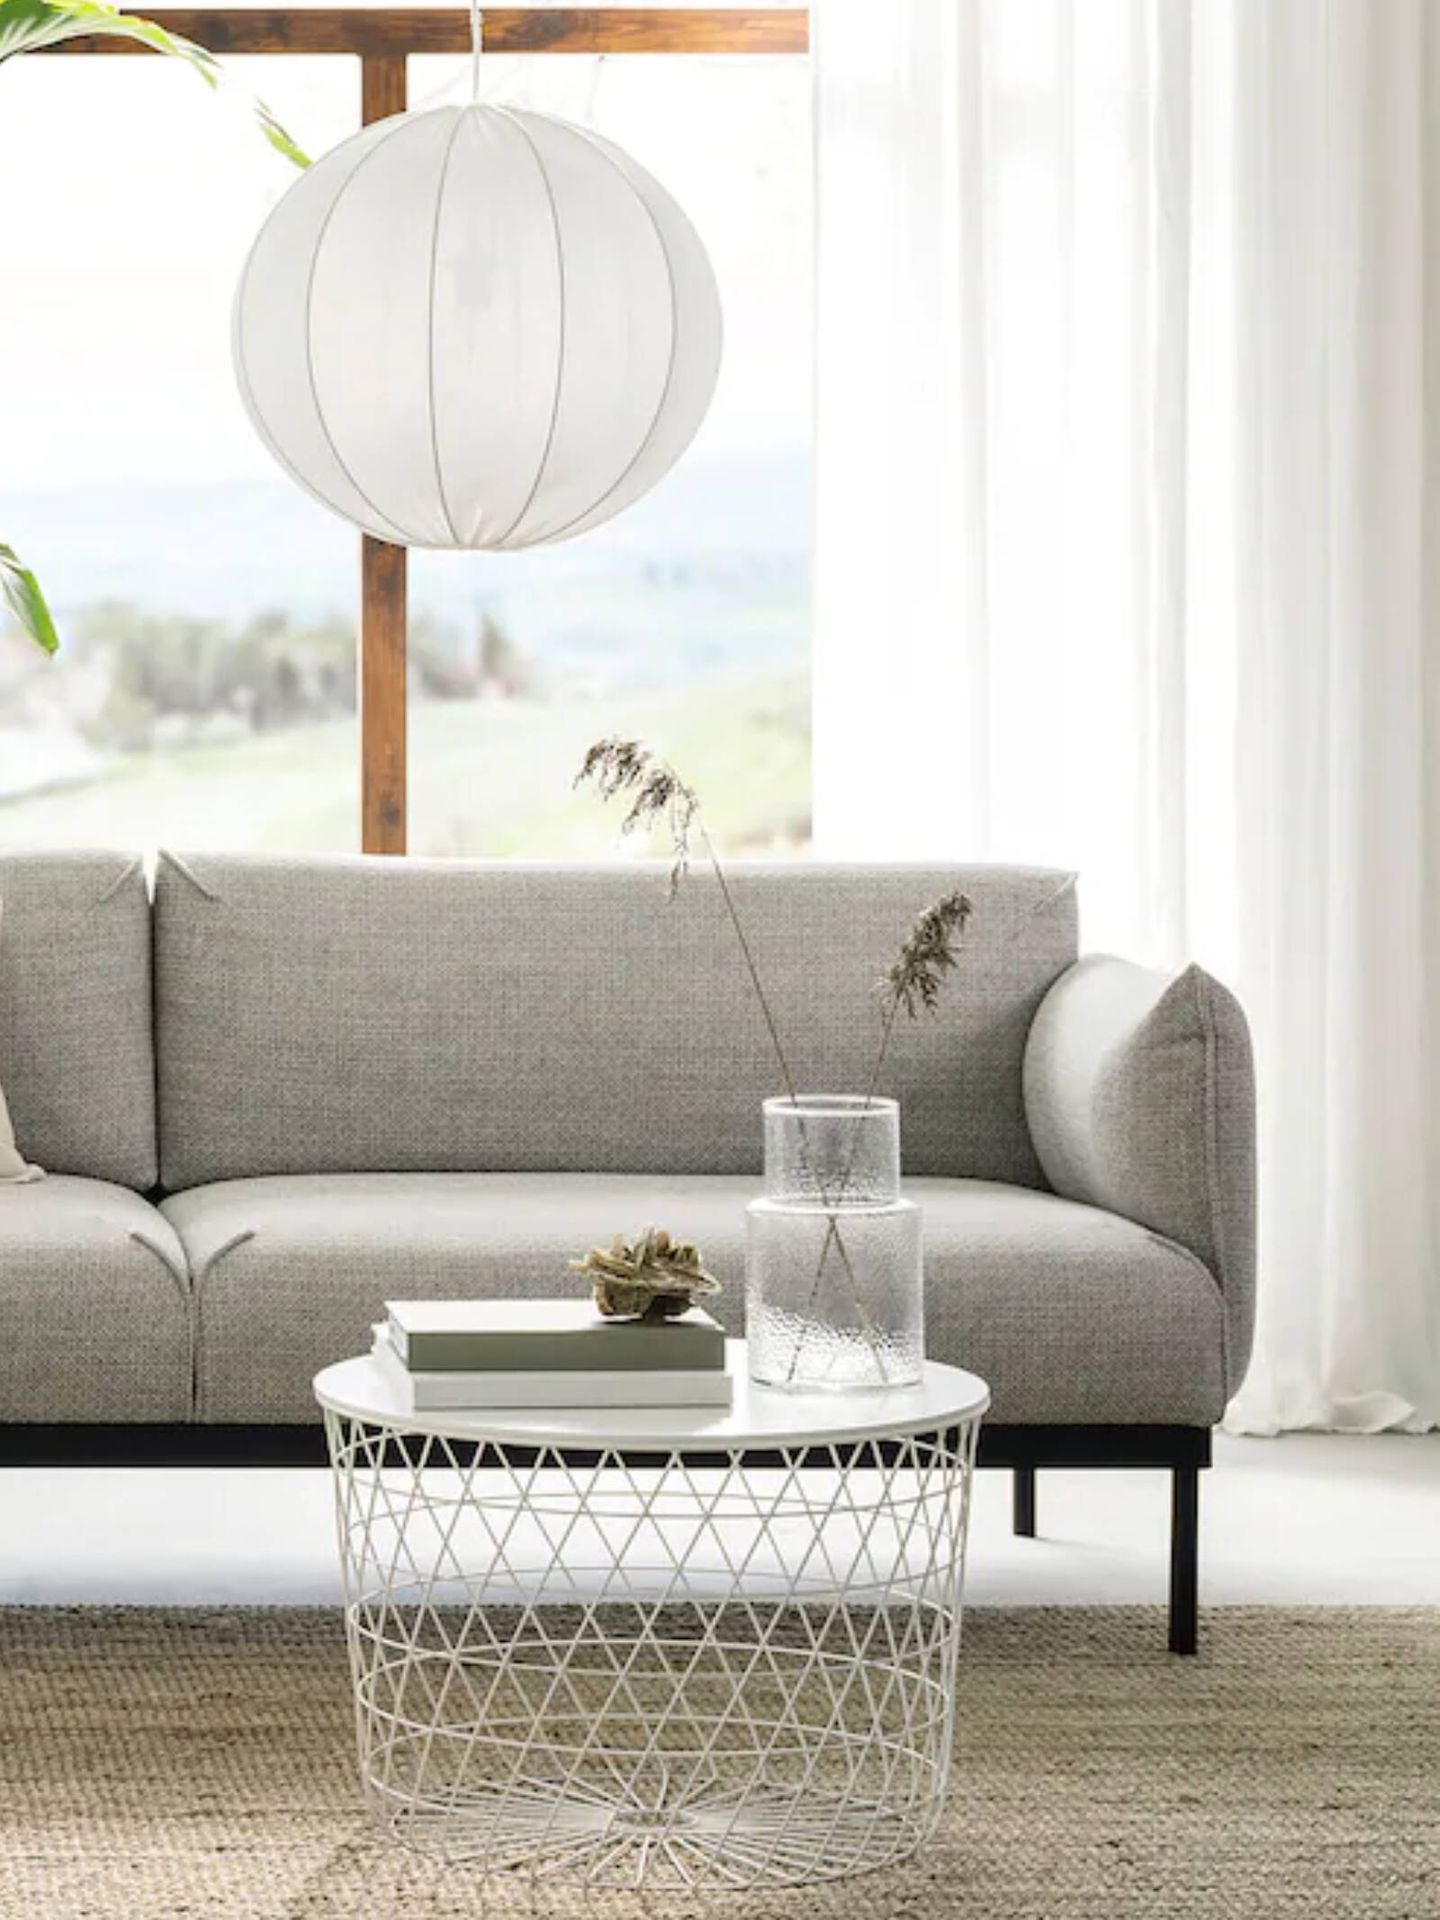 El nuevo sofá de Ikea es ideal si buscas muebles para tu salón pequeño. (Cortesía/Ikea)